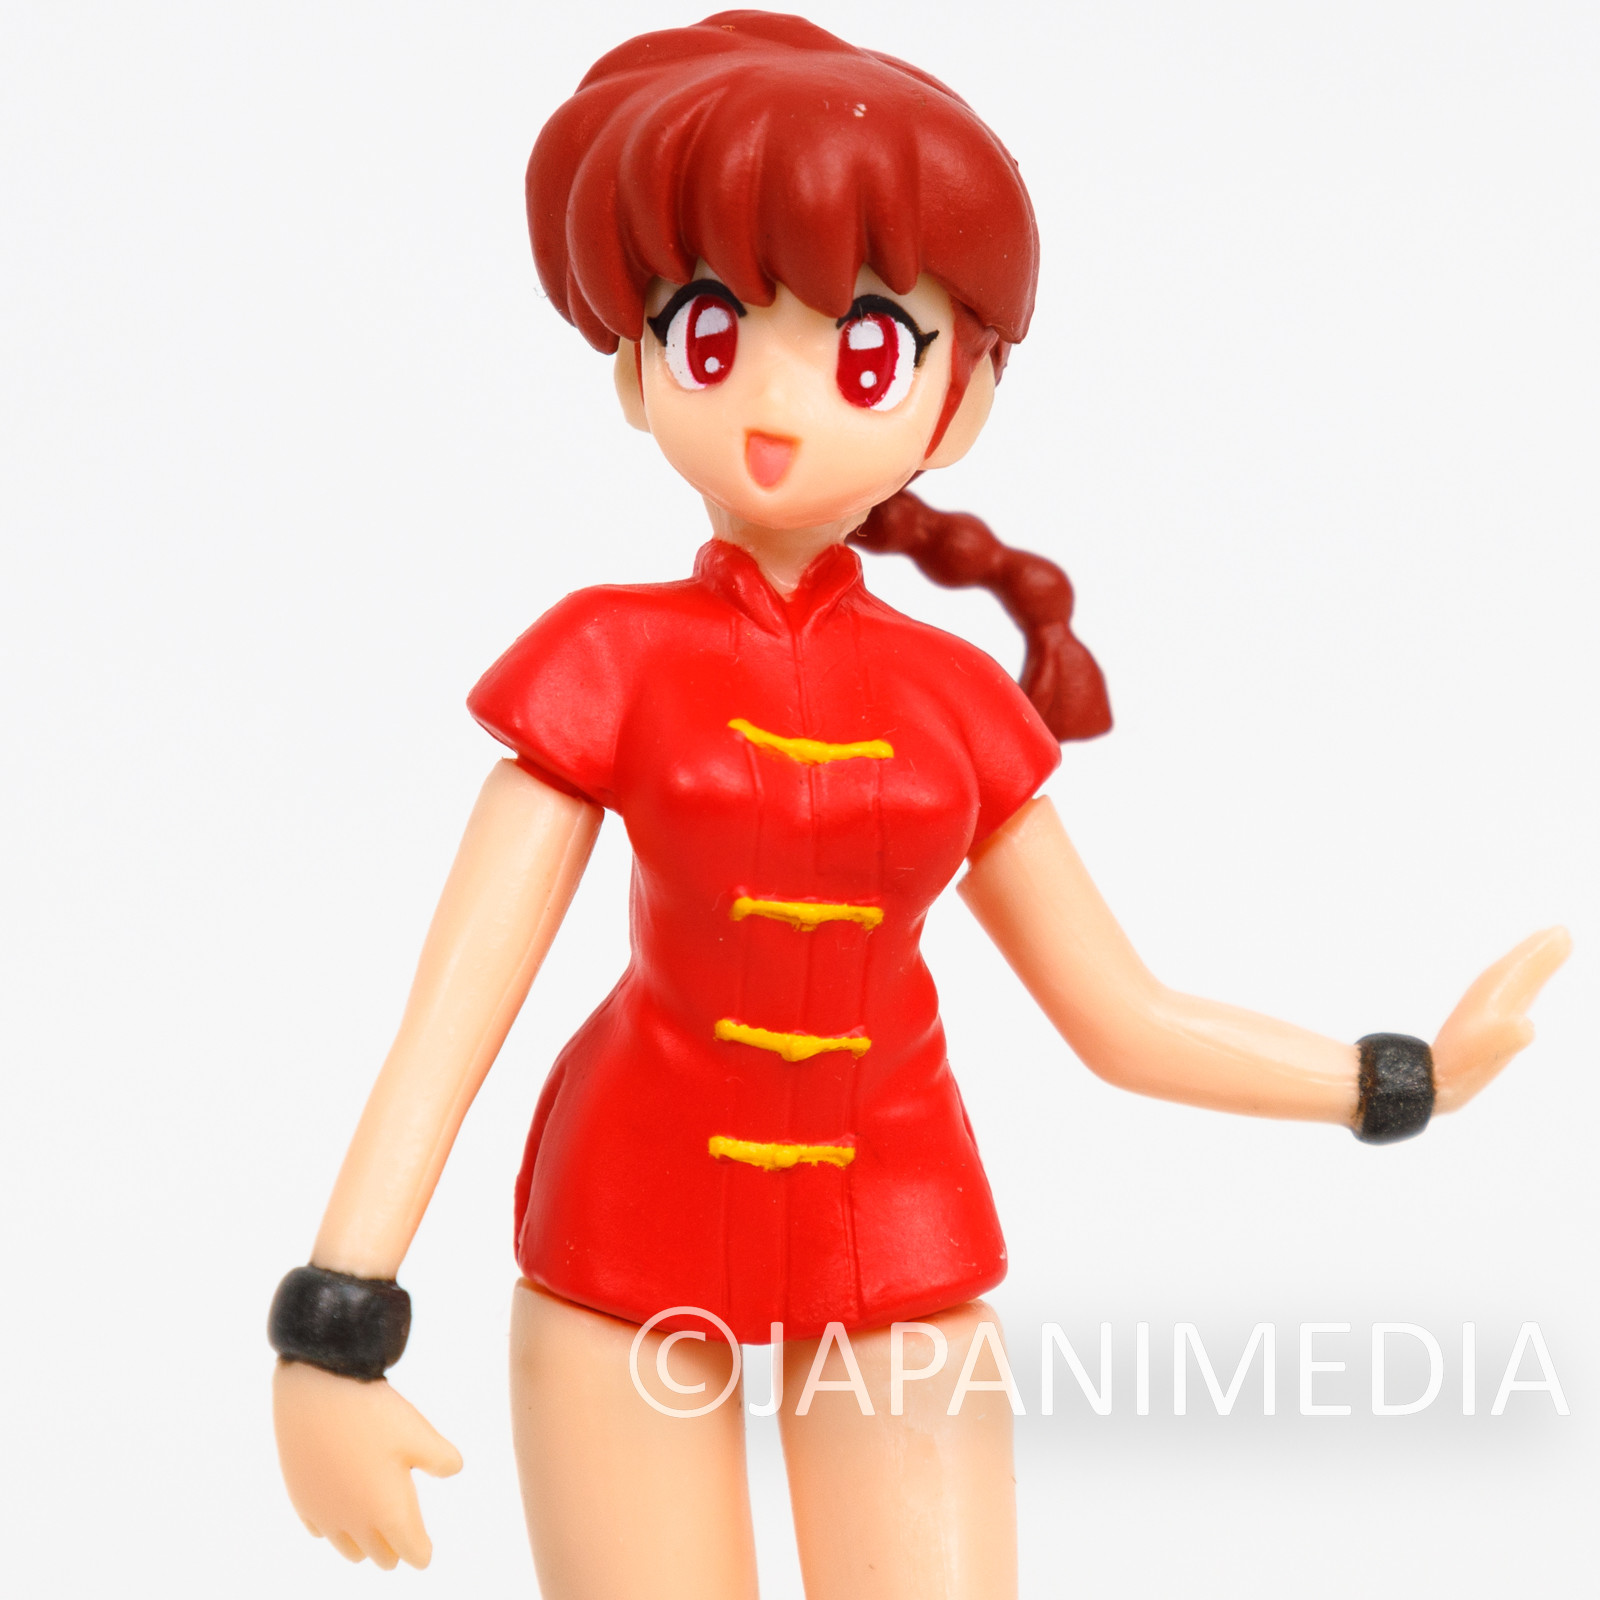 Ranma 1/2 Saotome Ranma Female Mini Figure BANDAI JAPAN ANIME MANGA